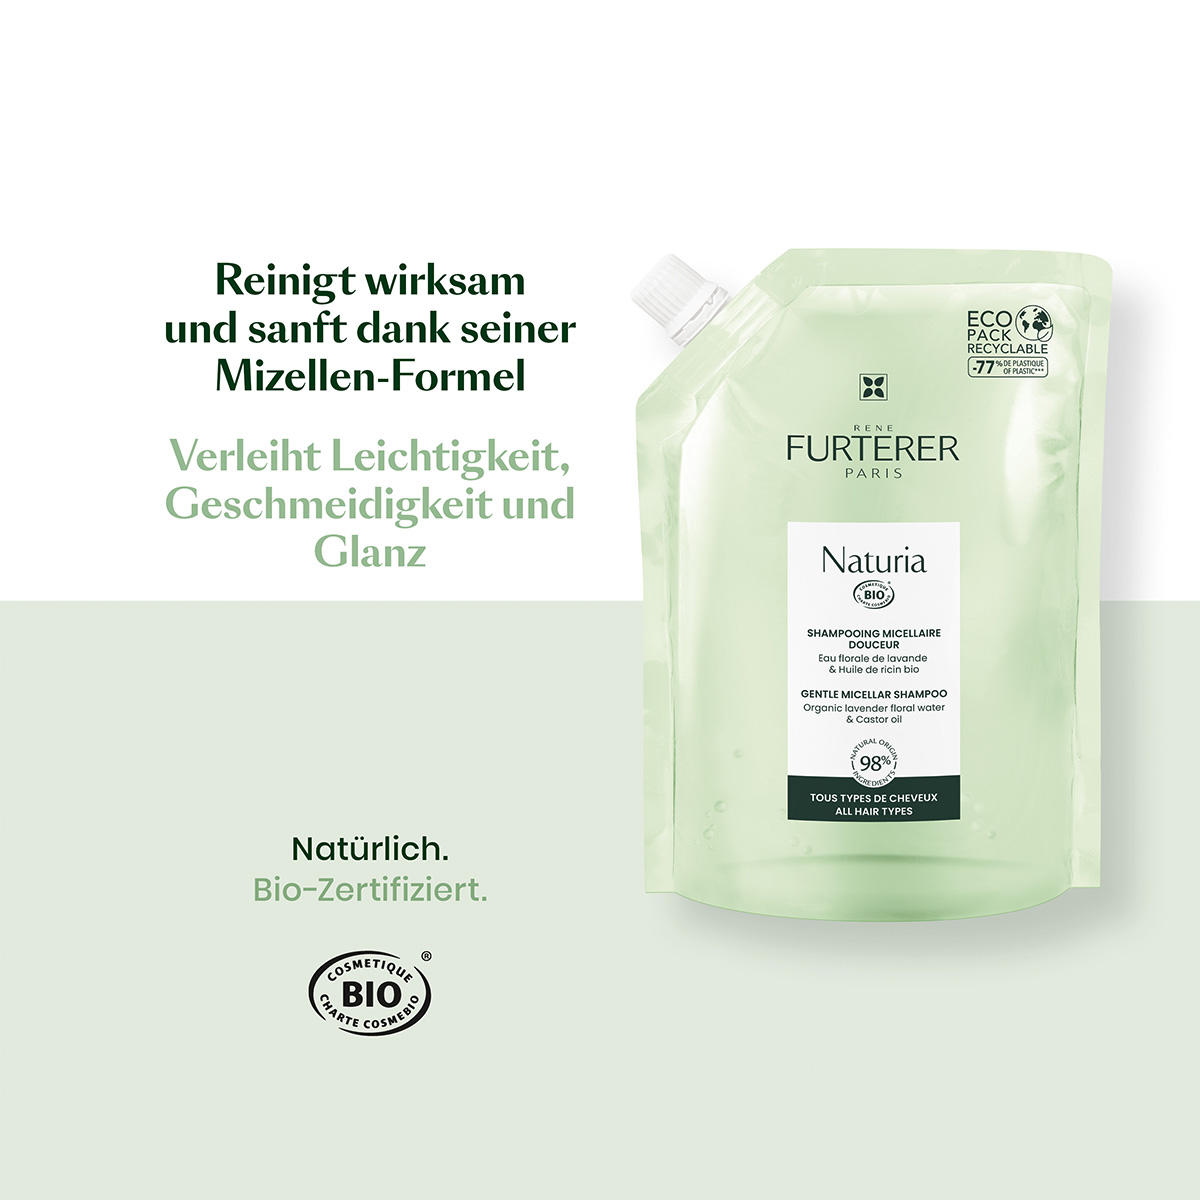 René Furterer Naturia Ricarica di shampoo micellare delicato 400 ml - 7